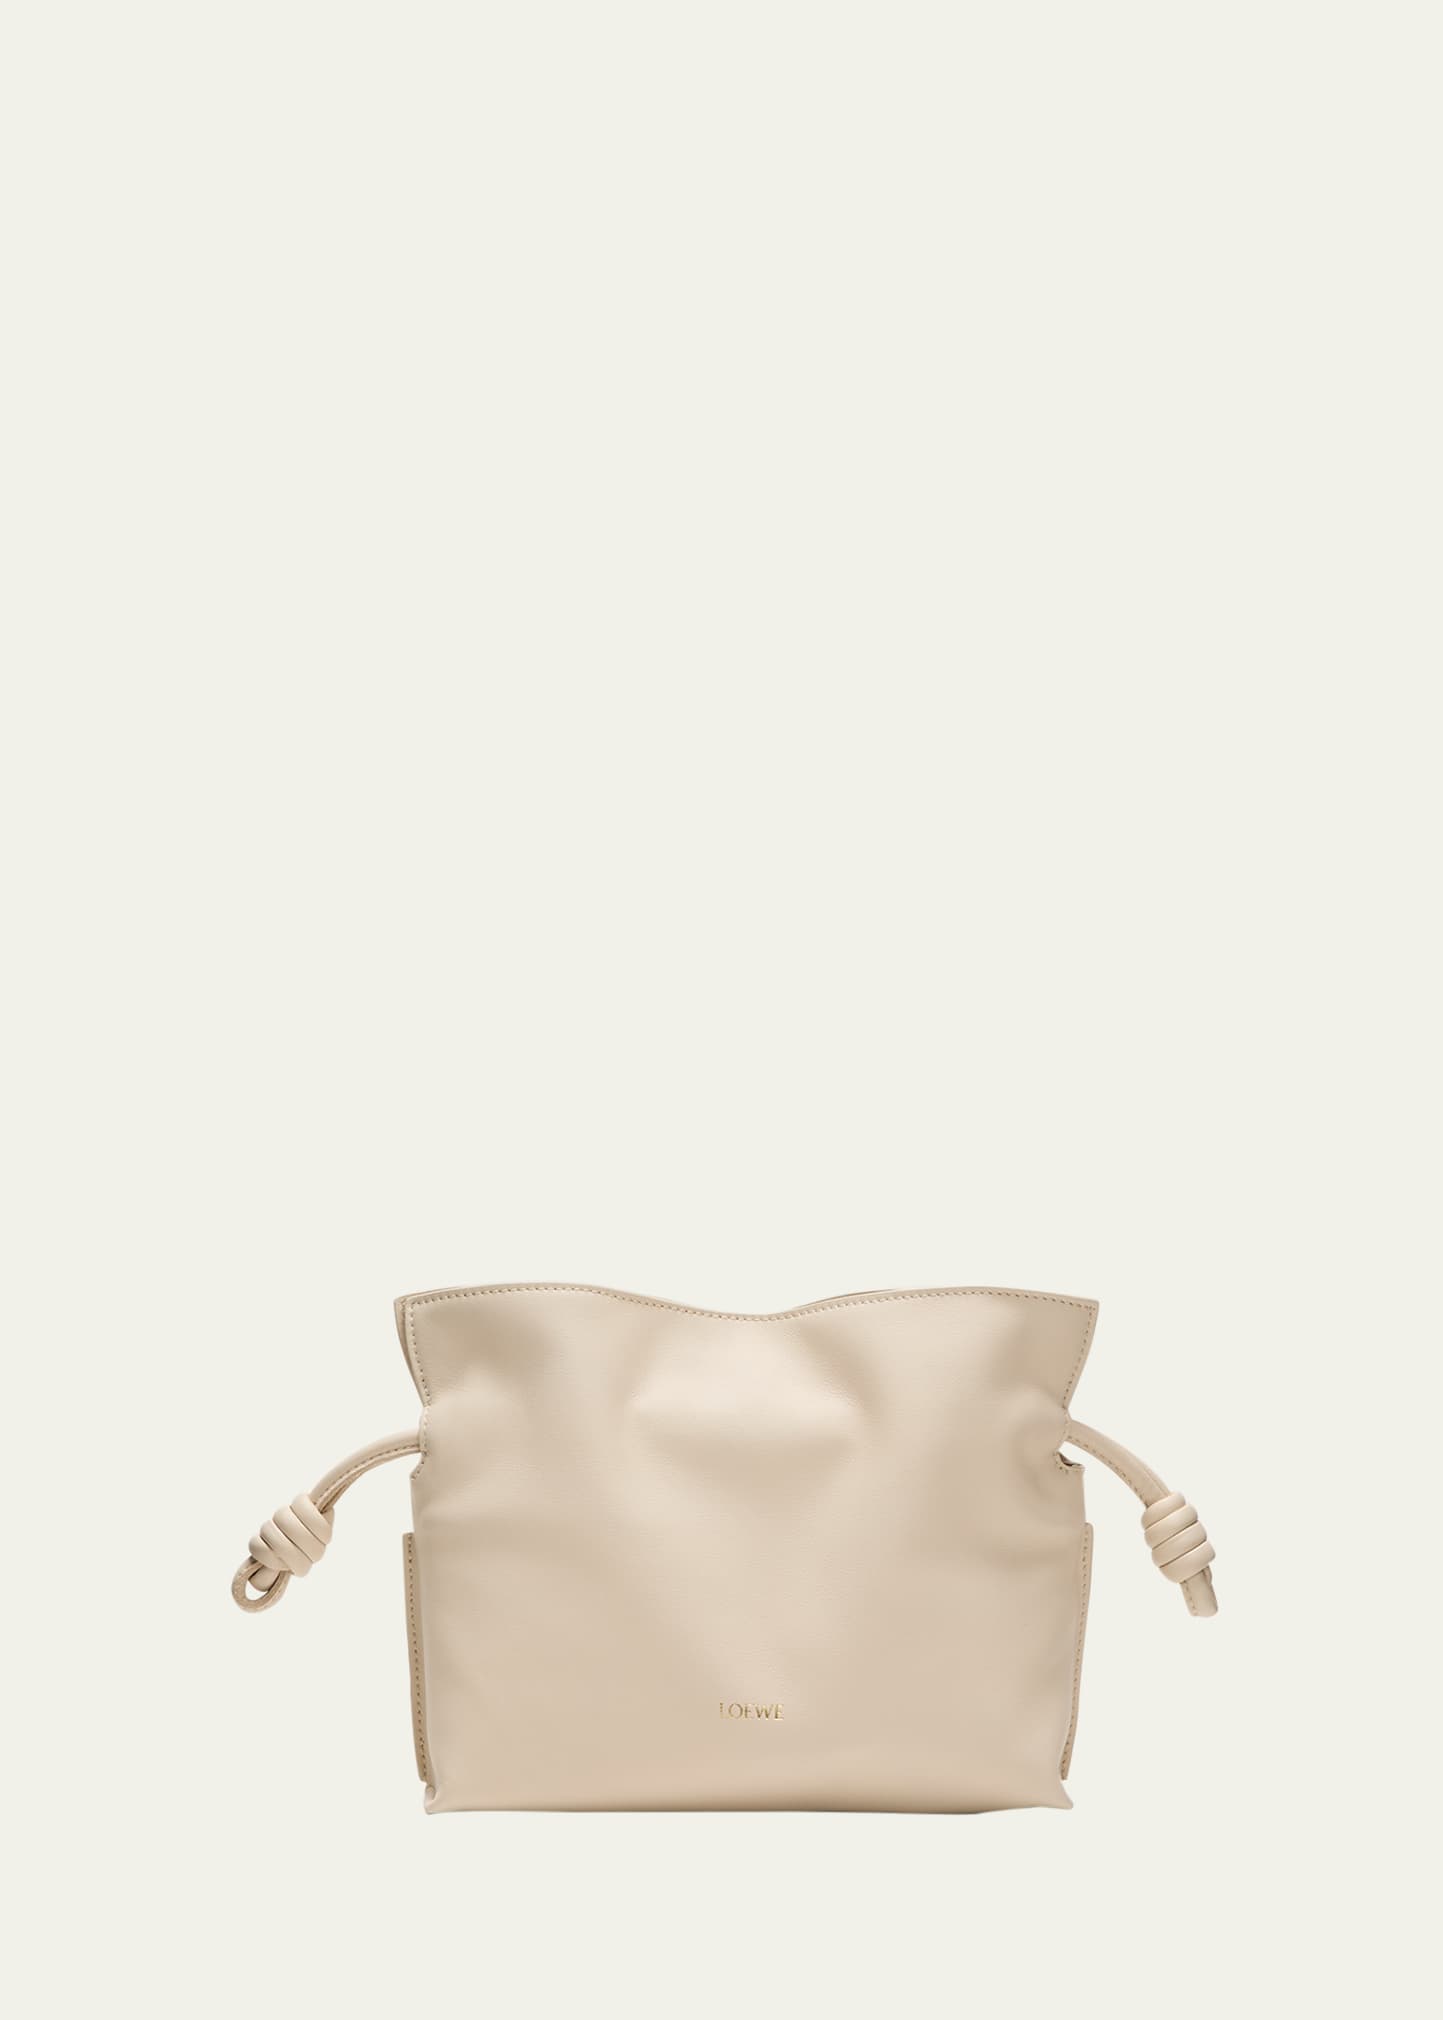 Loewe Flamenco Mini Leather Clutch Bag In Angora